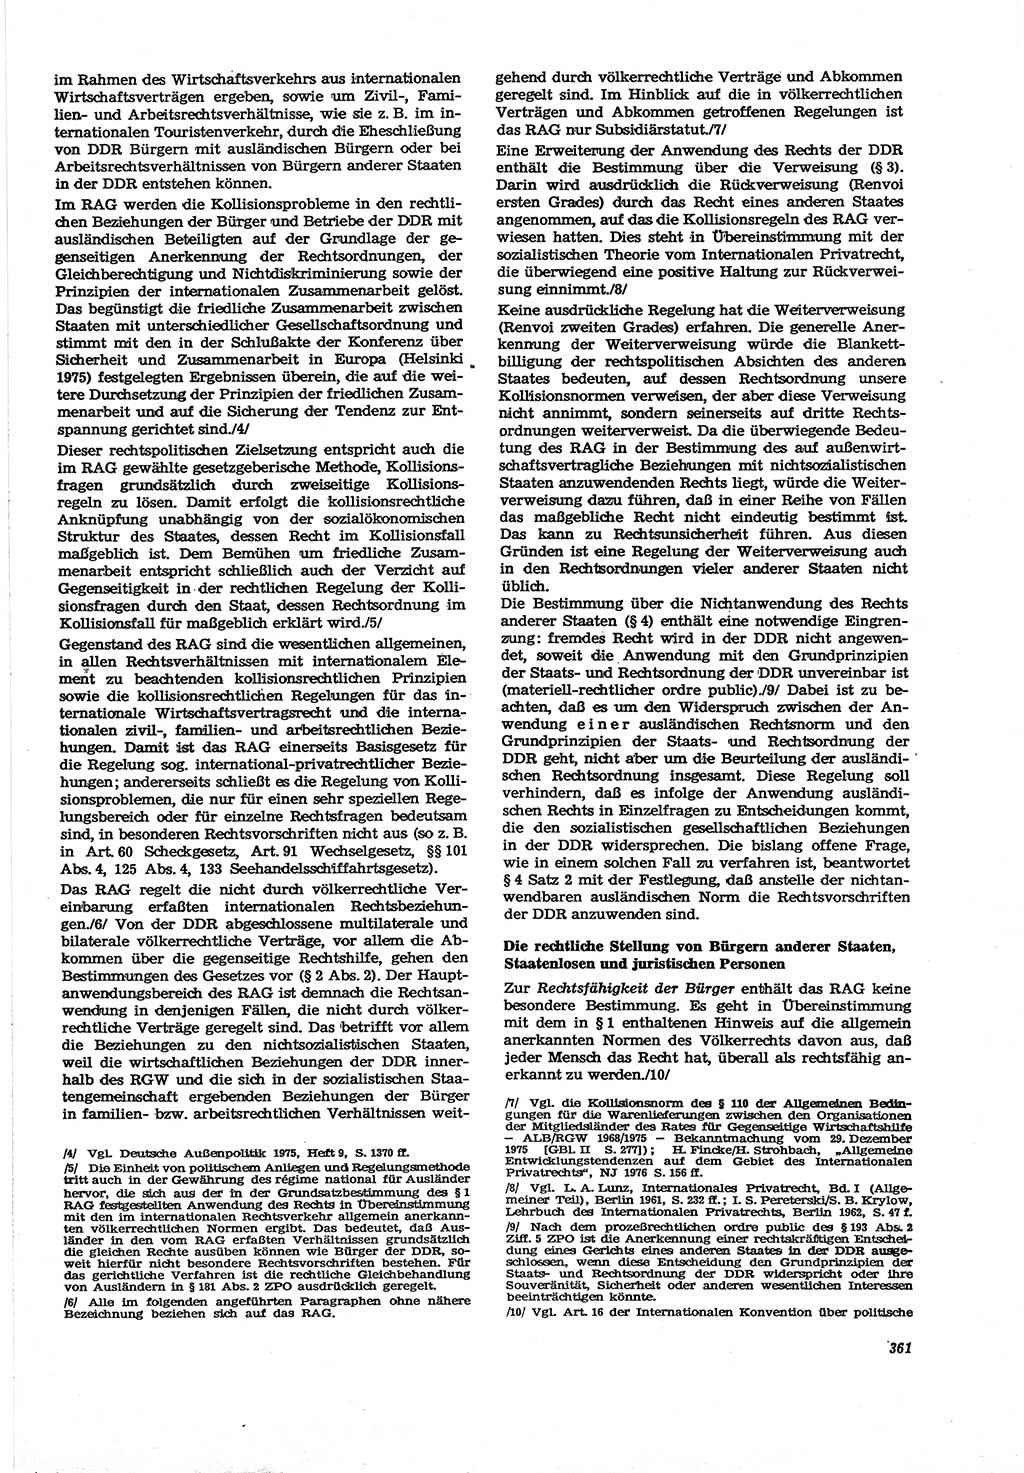 Neue Justiz (NJ), Zeitschrift für Recht und Rechtswissenschaft [Deutsche Demokratische Republik (DDR)], 30. Jahrgang 1976, Seite 361 (NJ DDR 1976, S. 361)